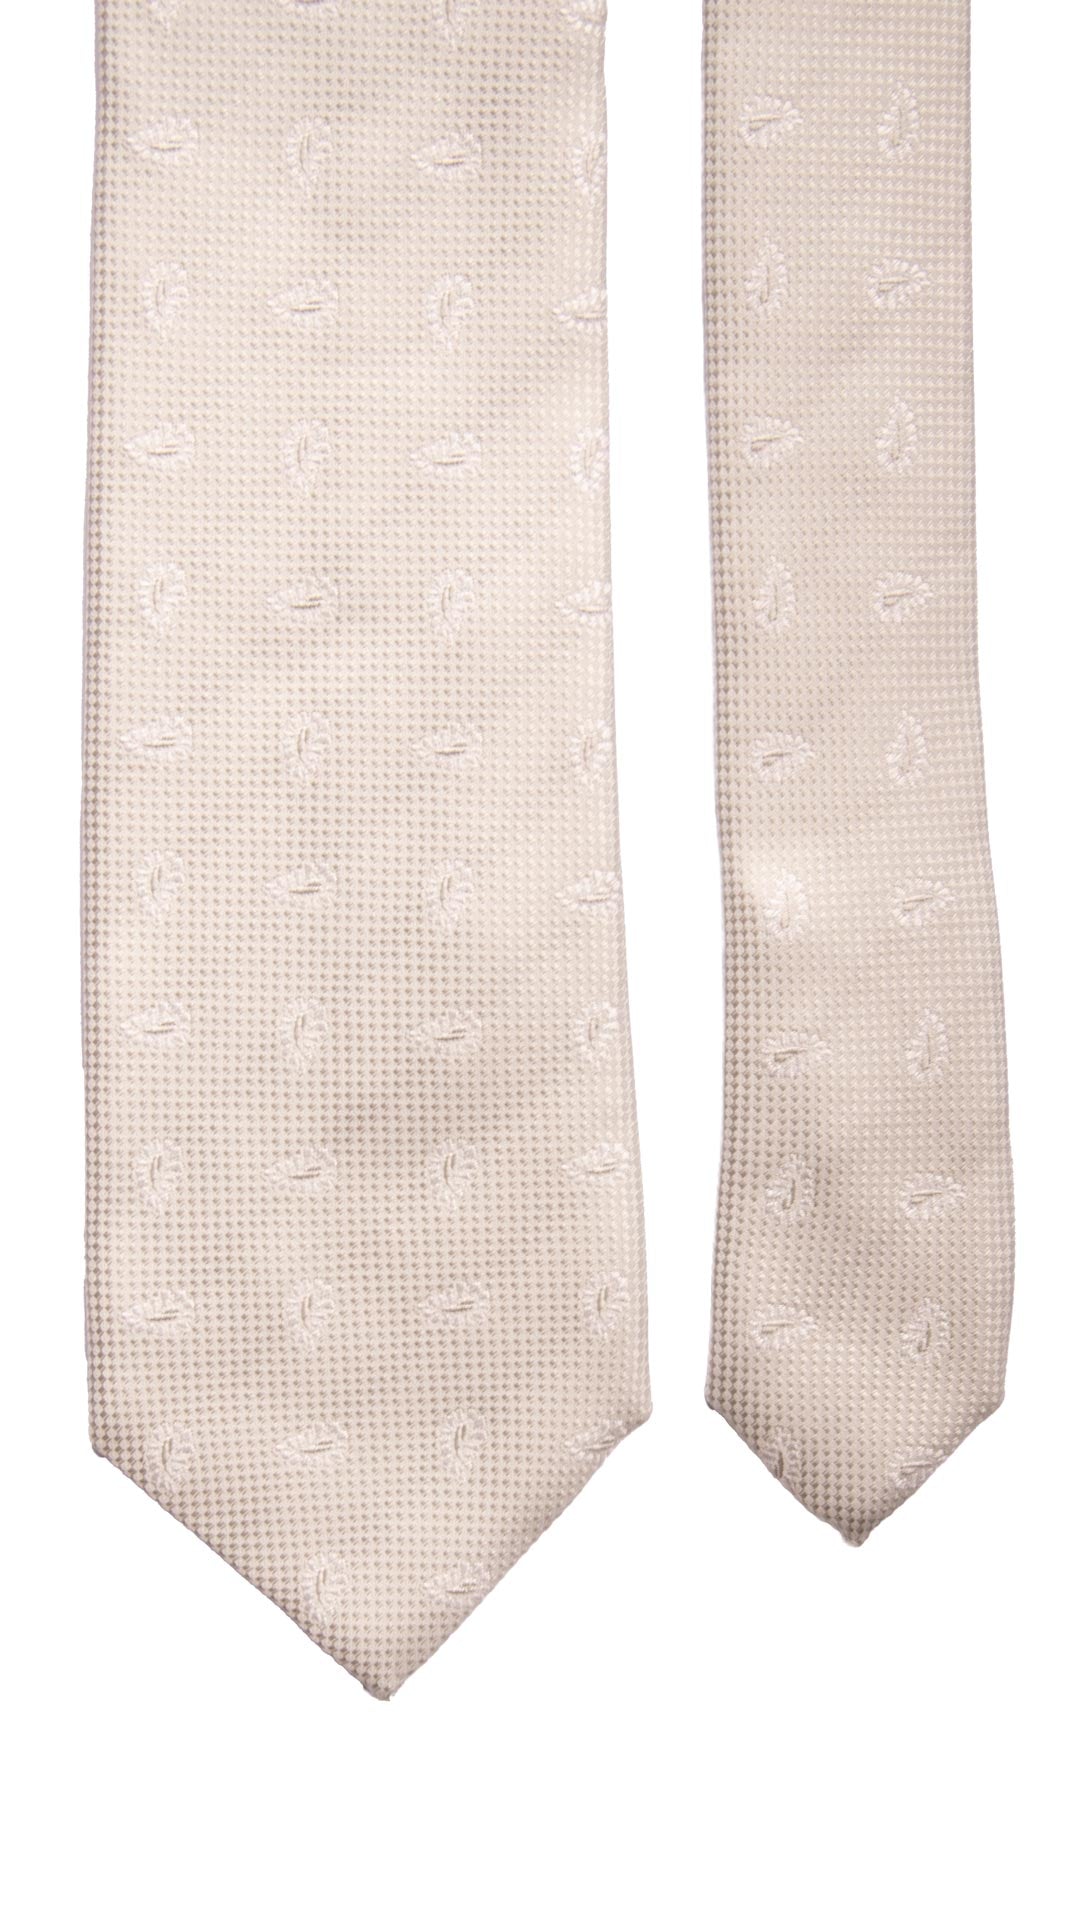 Cravatta da Cerimonia di Seta Grigio Perla Paisley Tono su Tono Made in Italy Graffeo Cravatte Pala